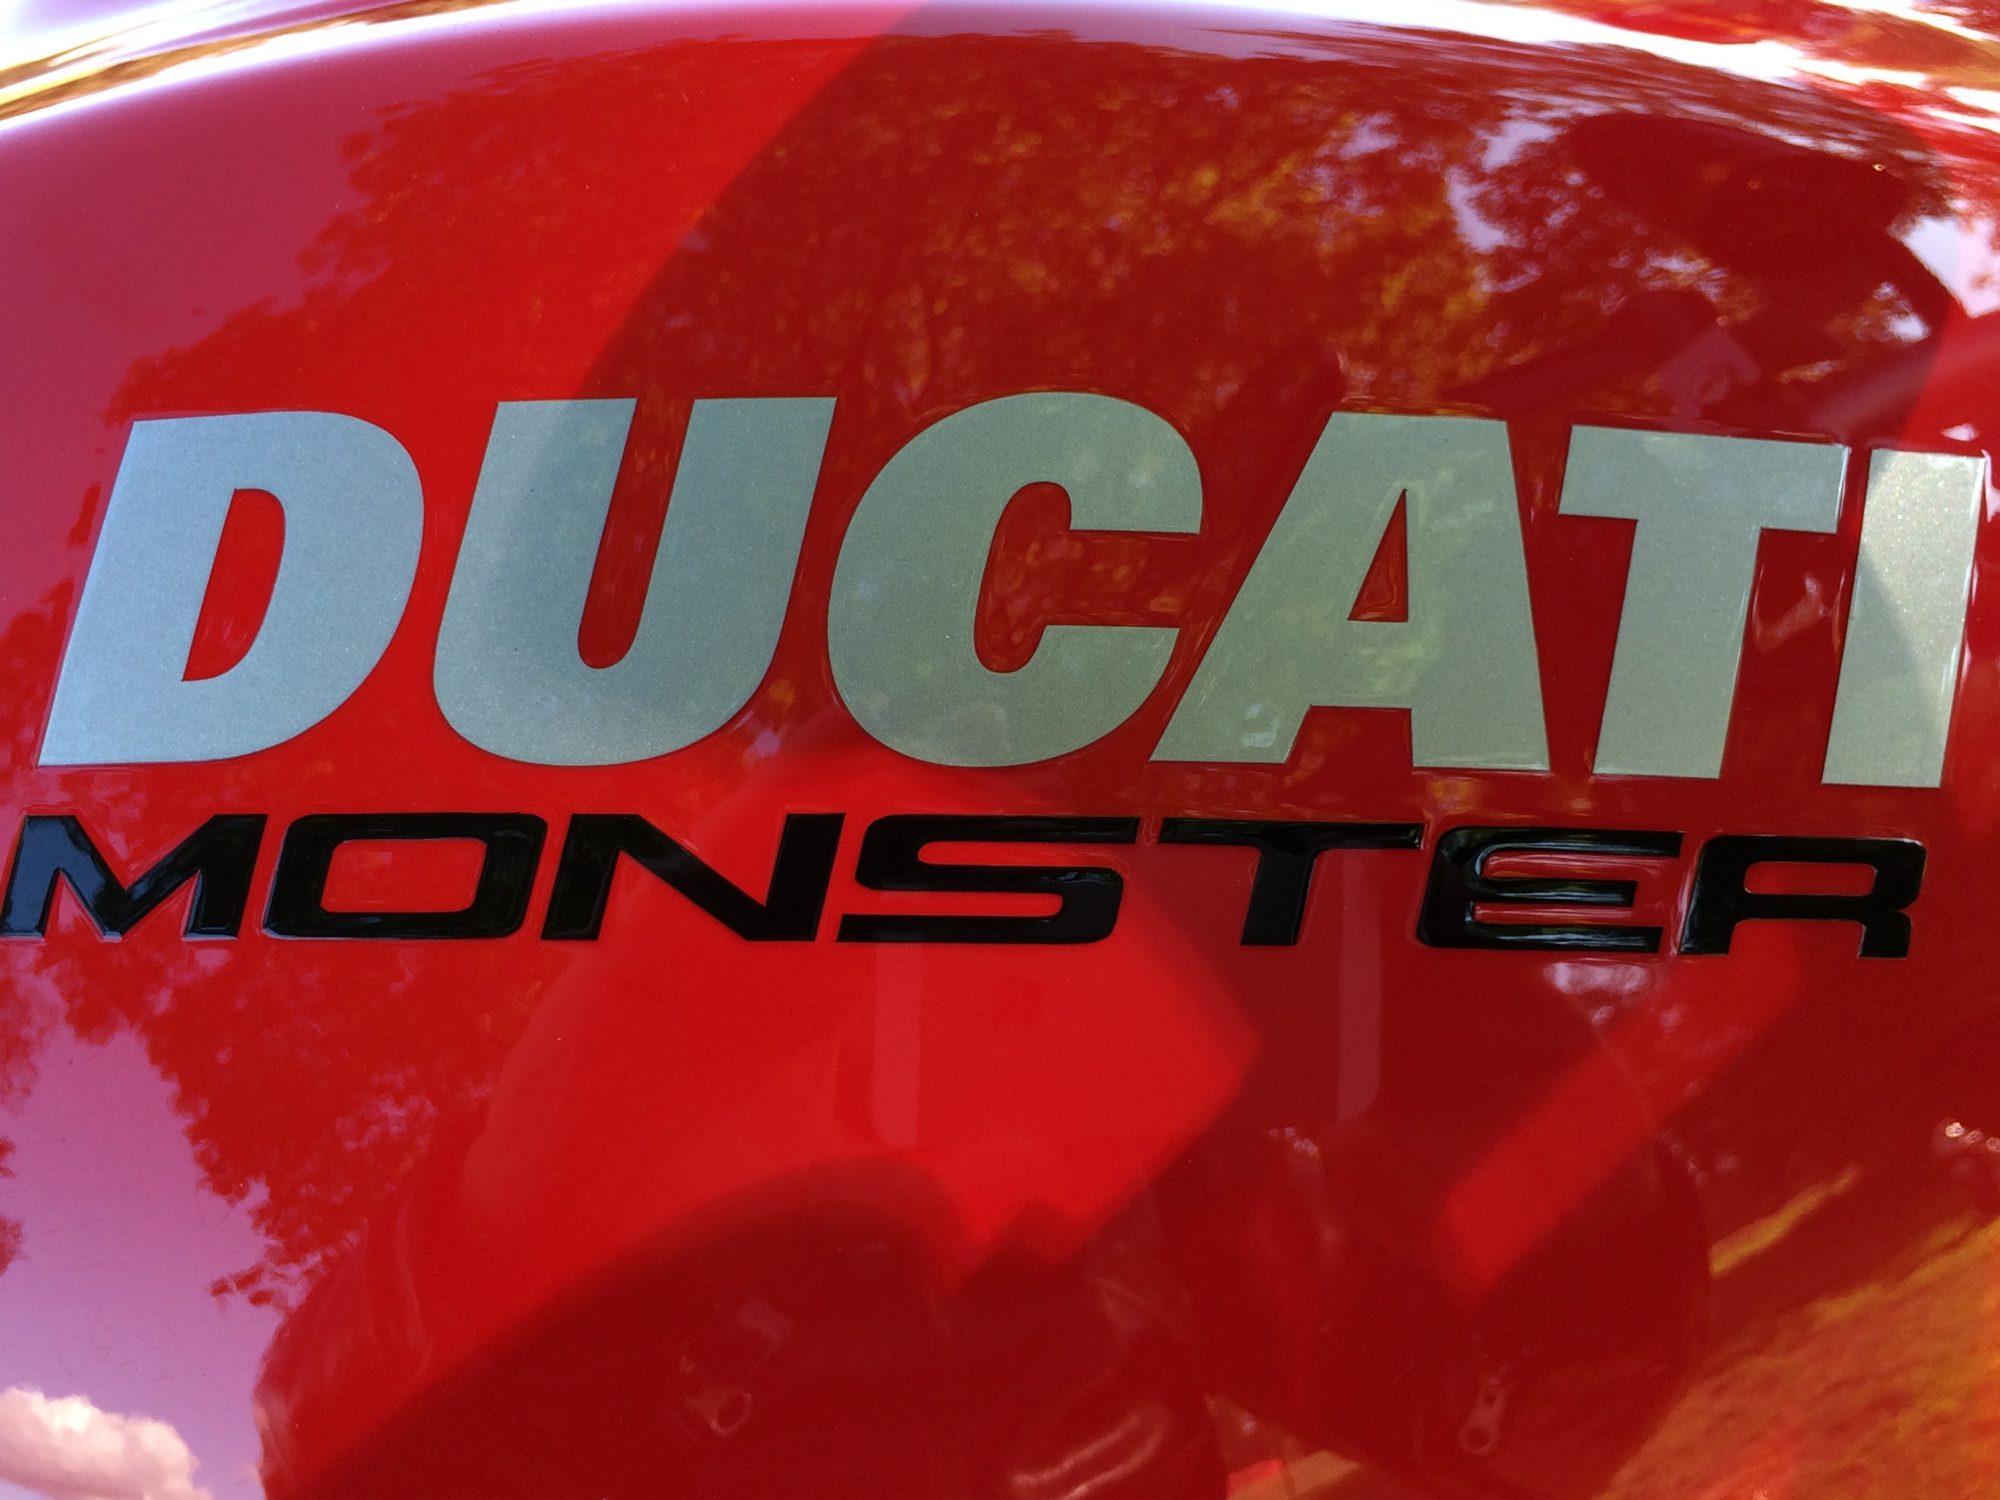 Ducati Monster Tank Image